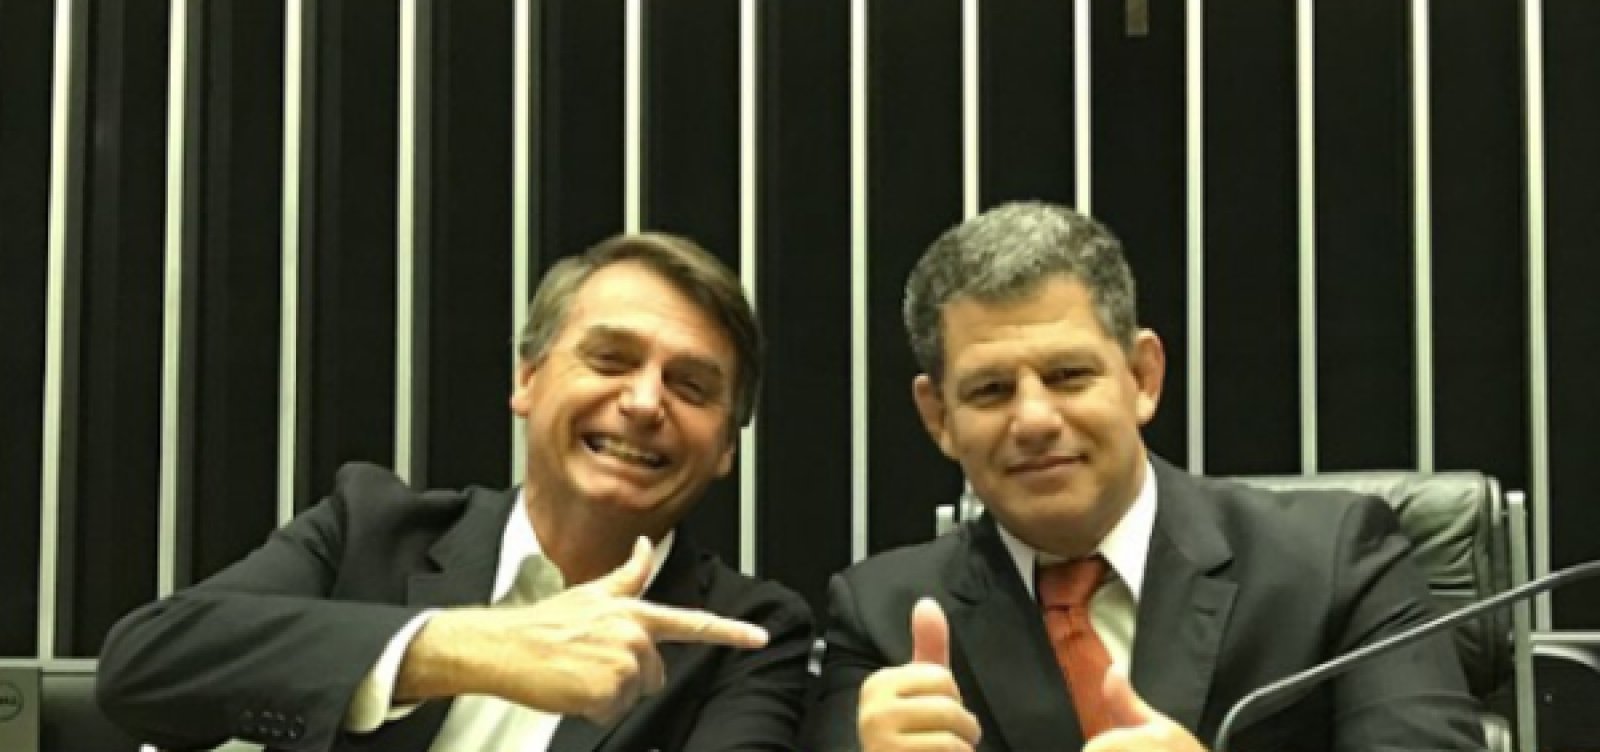 Bebianno diz que pretende juntar documentos sobre campanha de Bolsonaro, afirma coluna